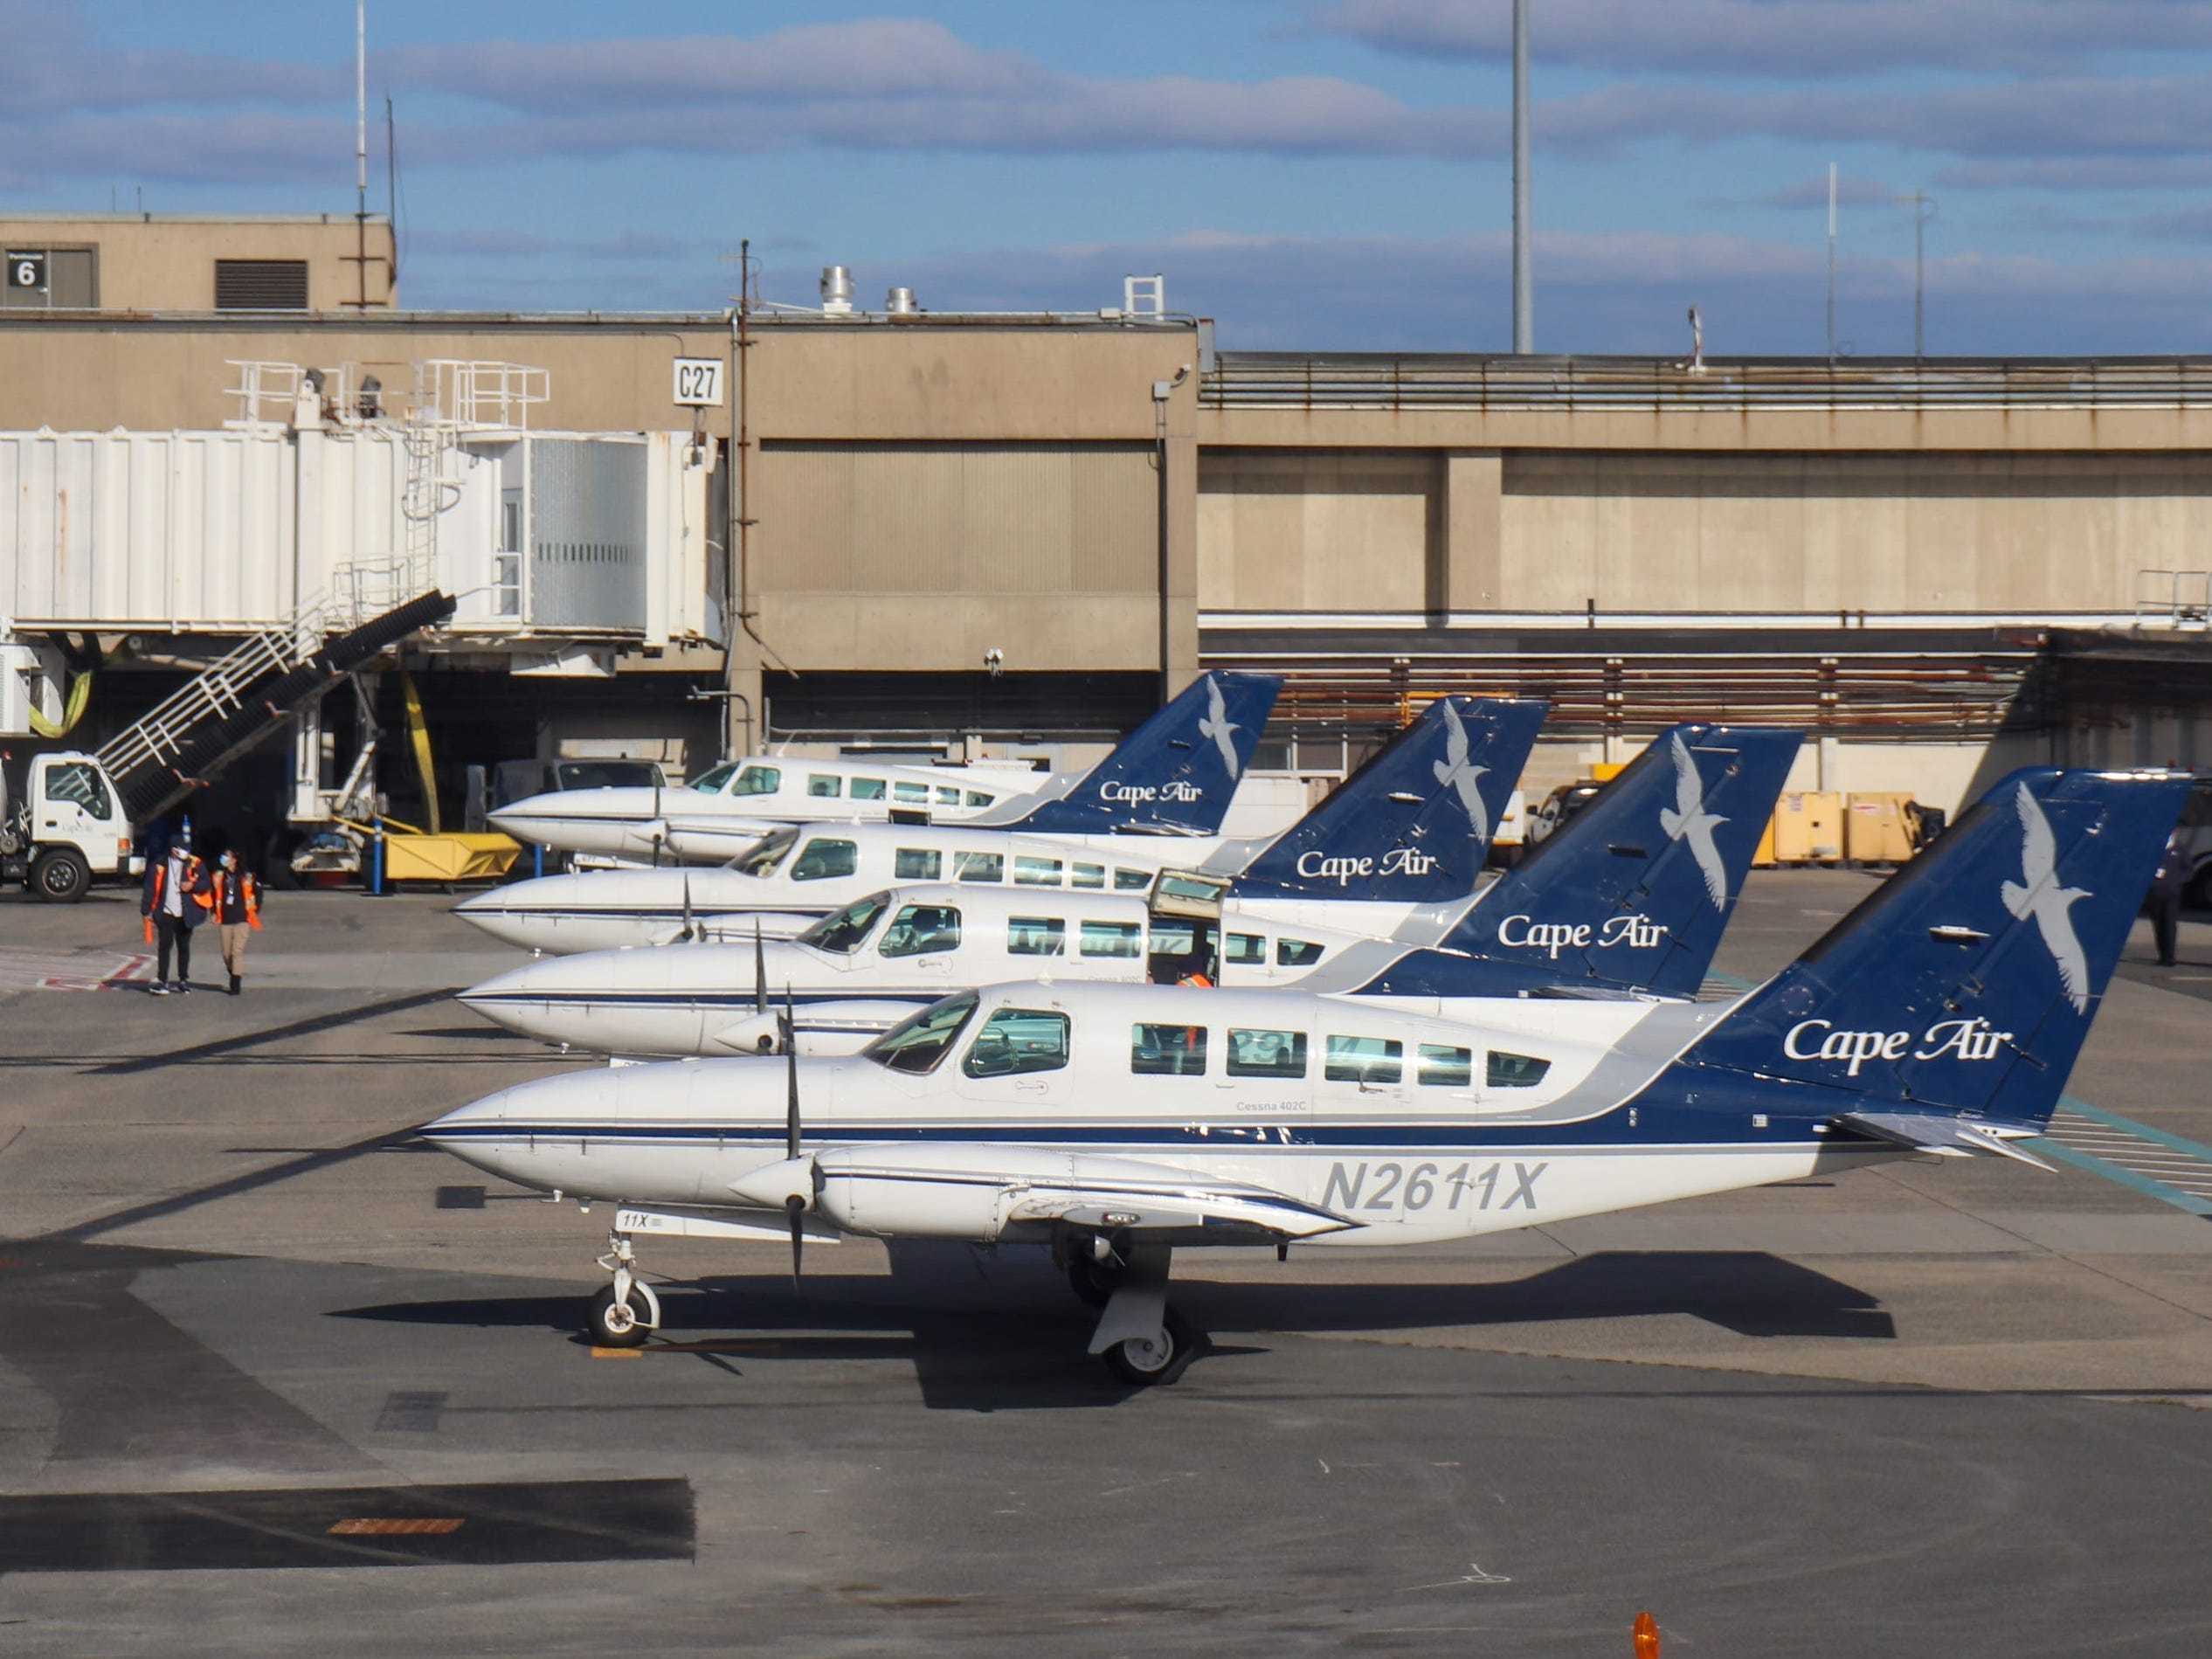 Cape Air Boston Logan International Airport